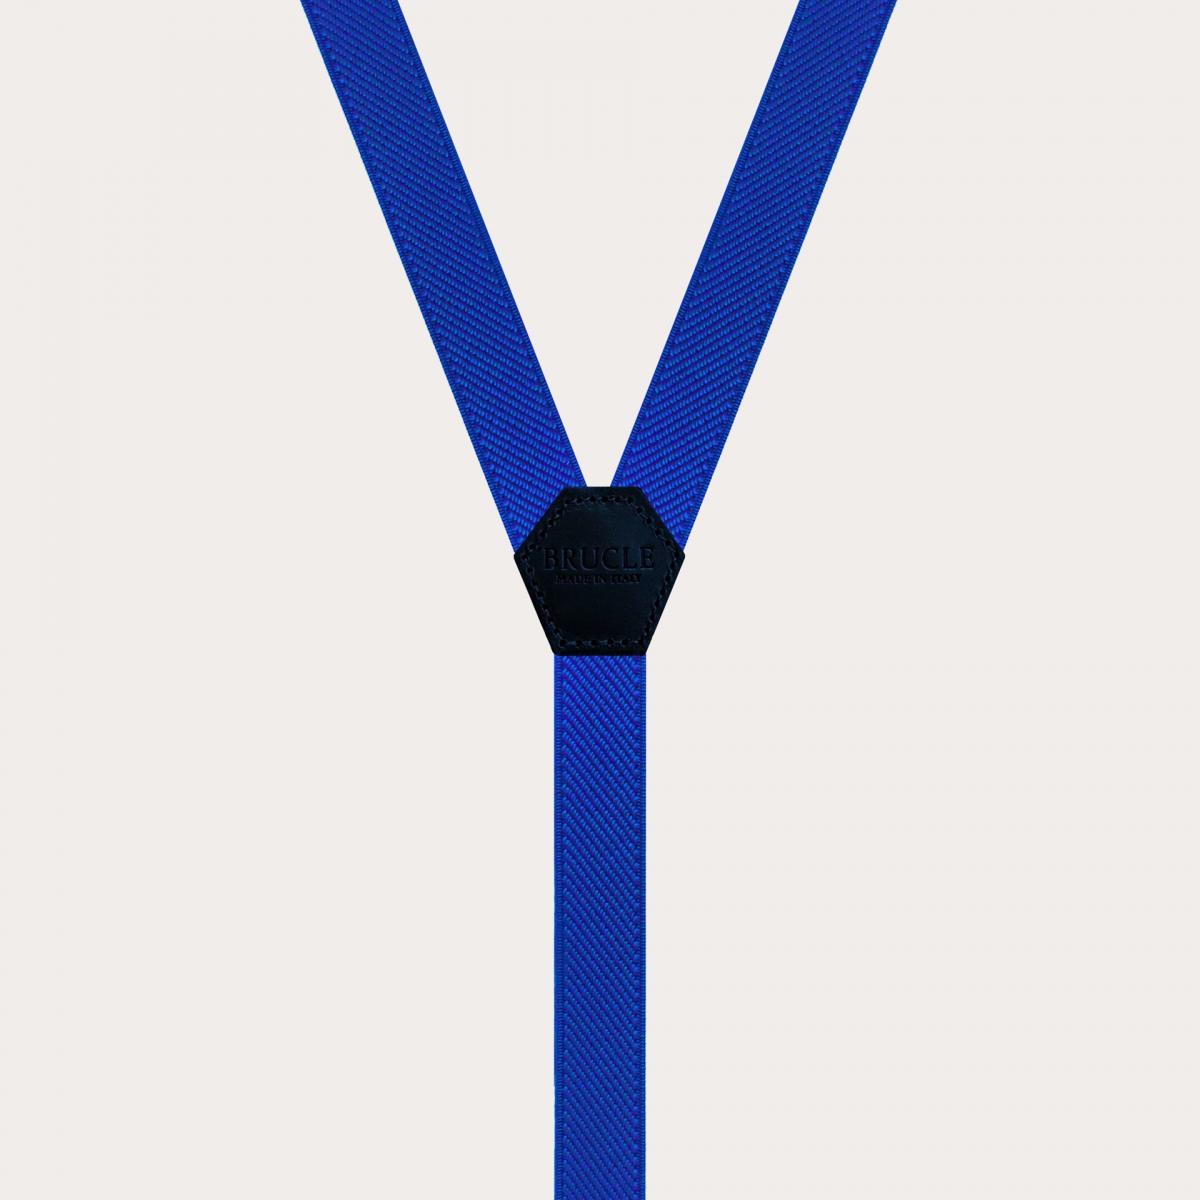 Schmale Unisex-Hosenträger in Y-Form für Kinder und Jugendliche, Königsblau